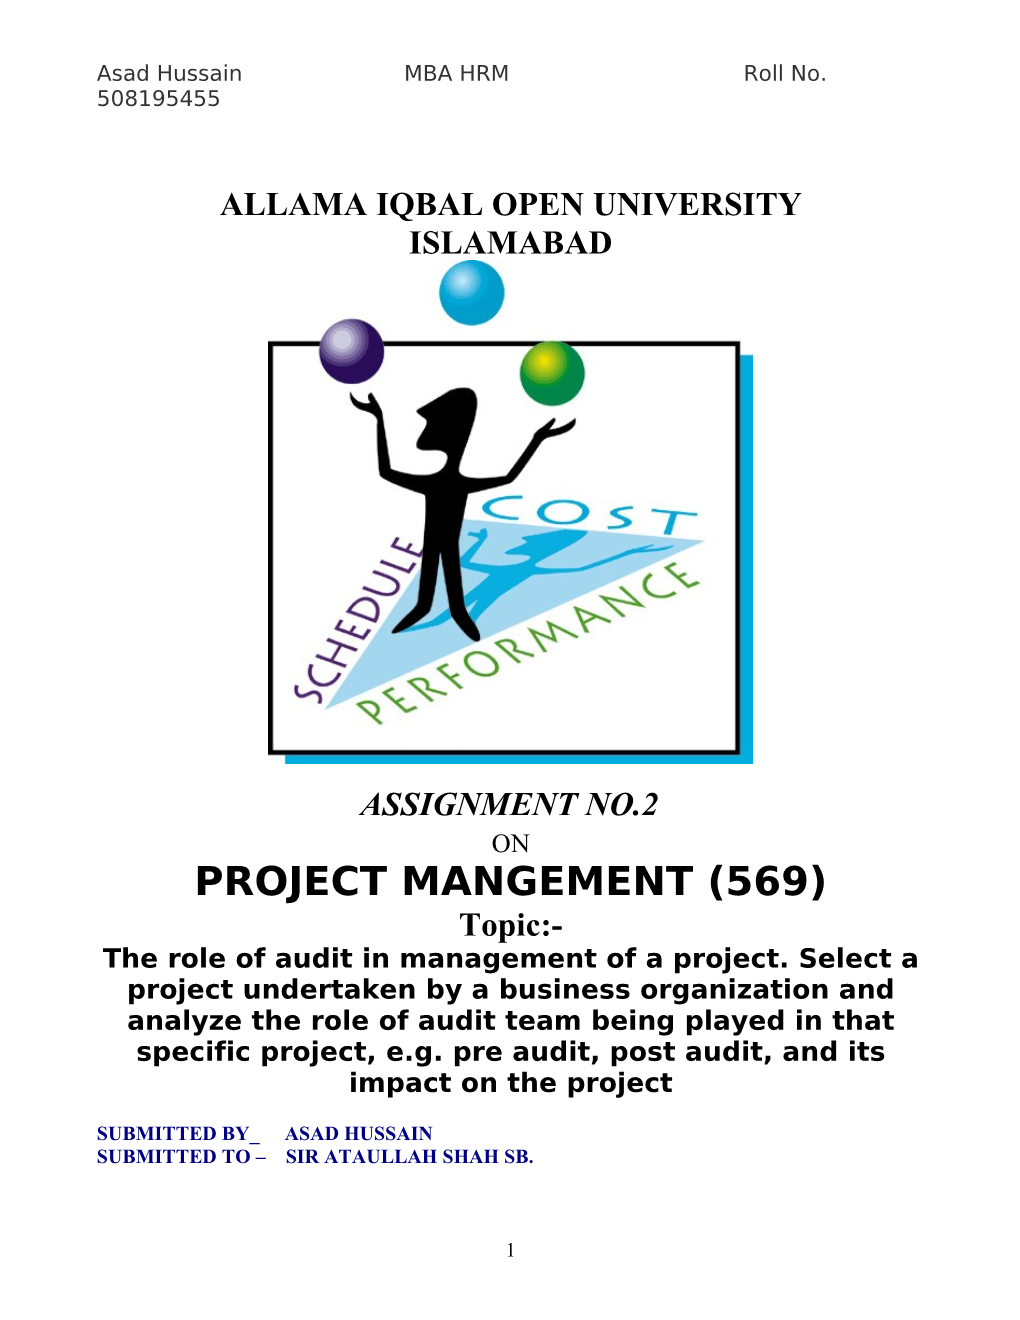 Project Audit Process